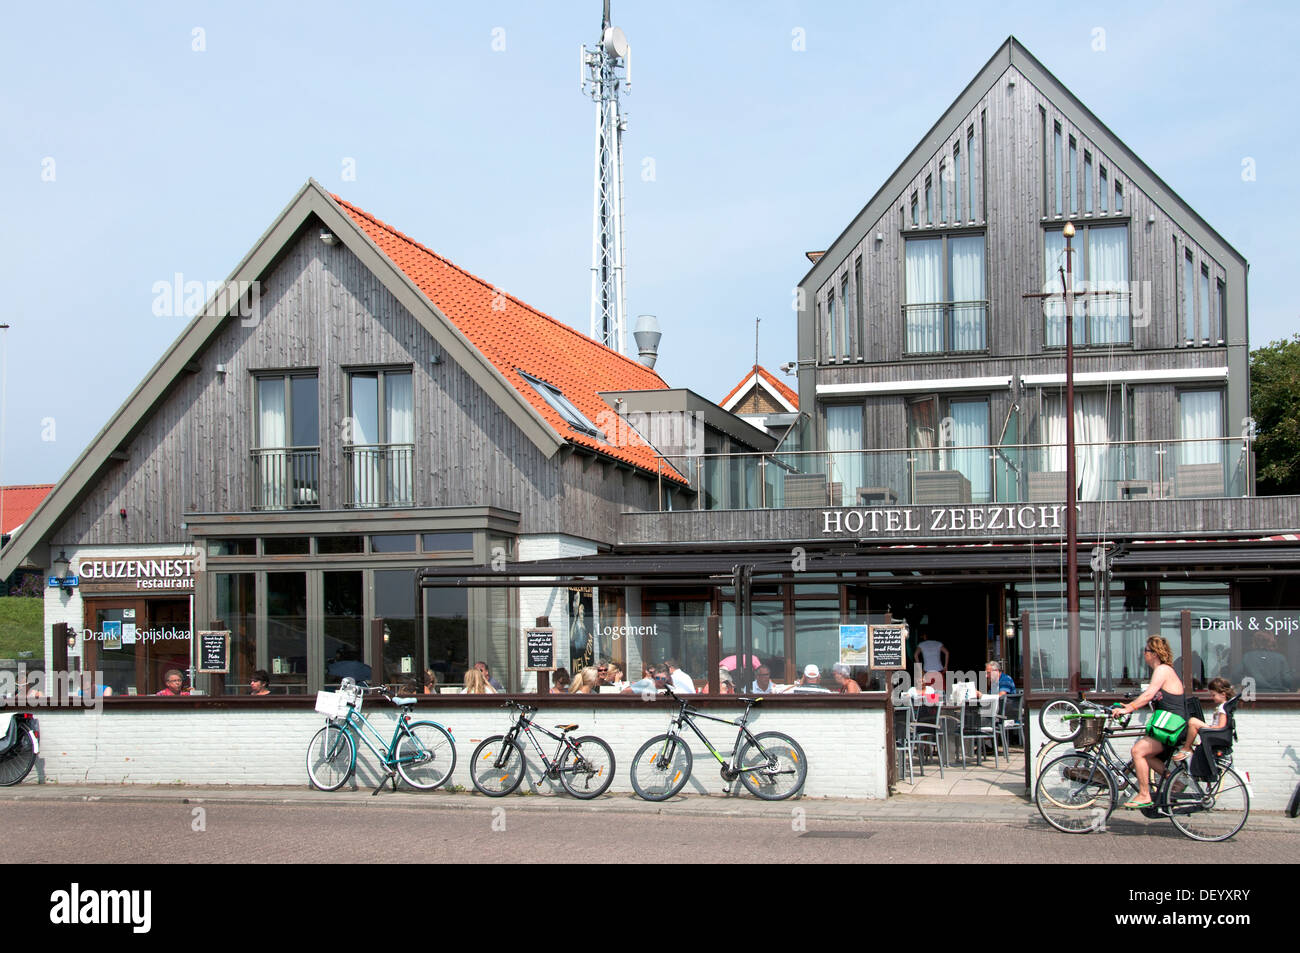 Insel Vlieland Wattenmeer Friesland Niederlande Stockfoto